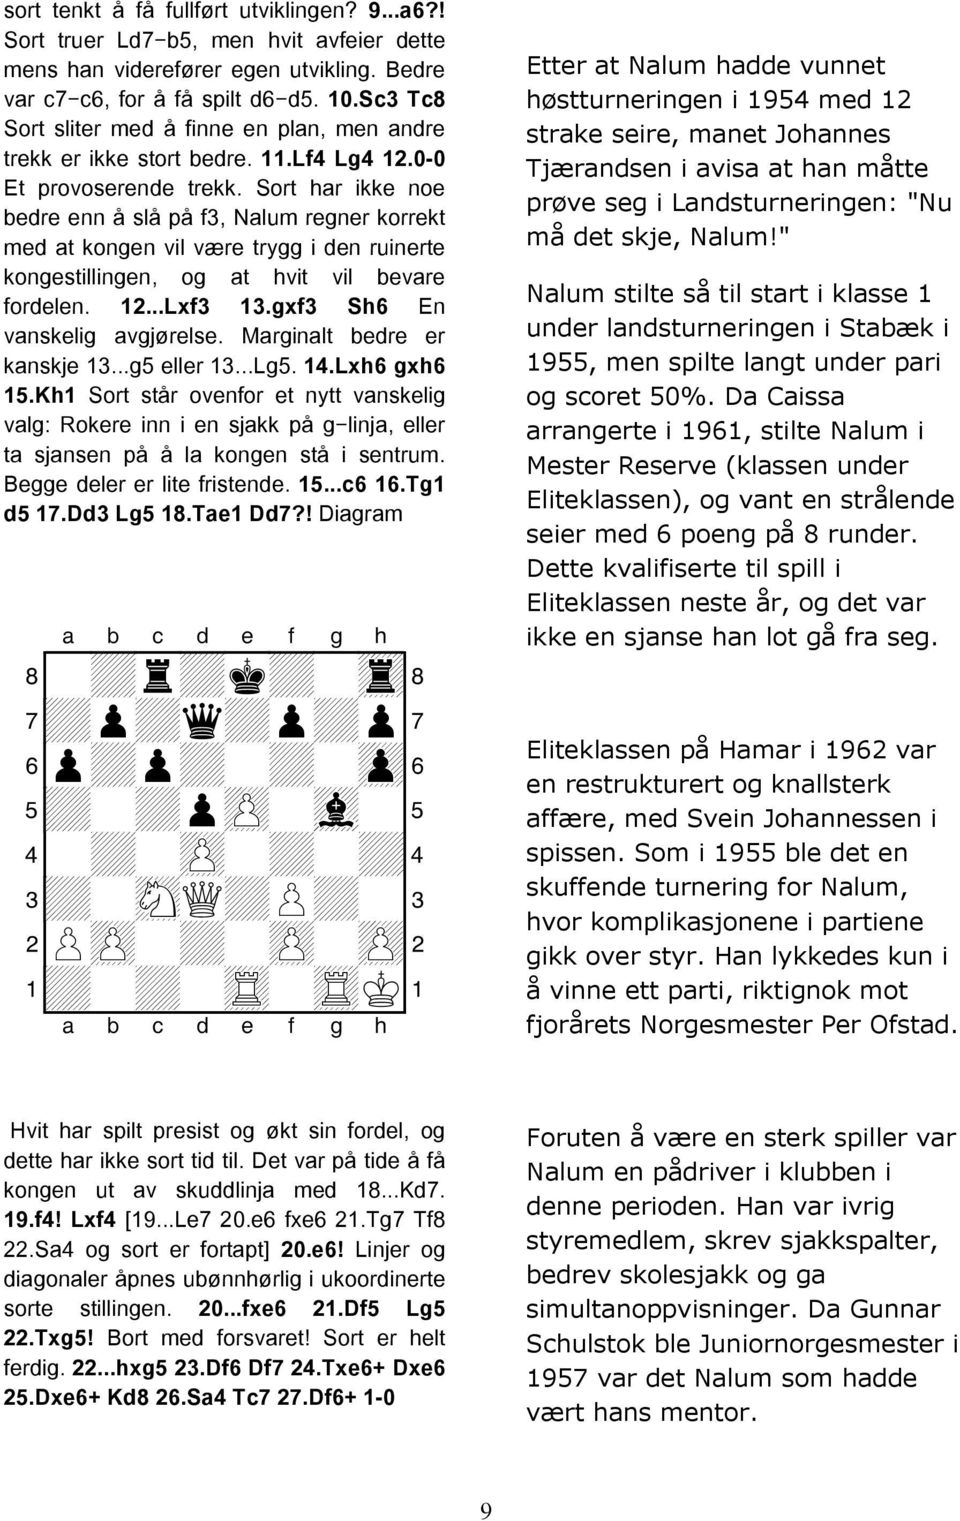 Sort har ikke noe bedre enn å slå på f3, Nalum regner korrekt med at kongen vil være trygg i den ruinerte kongestillingen, og at hvit vil bevare fordelen. 12...Lxf3 13.